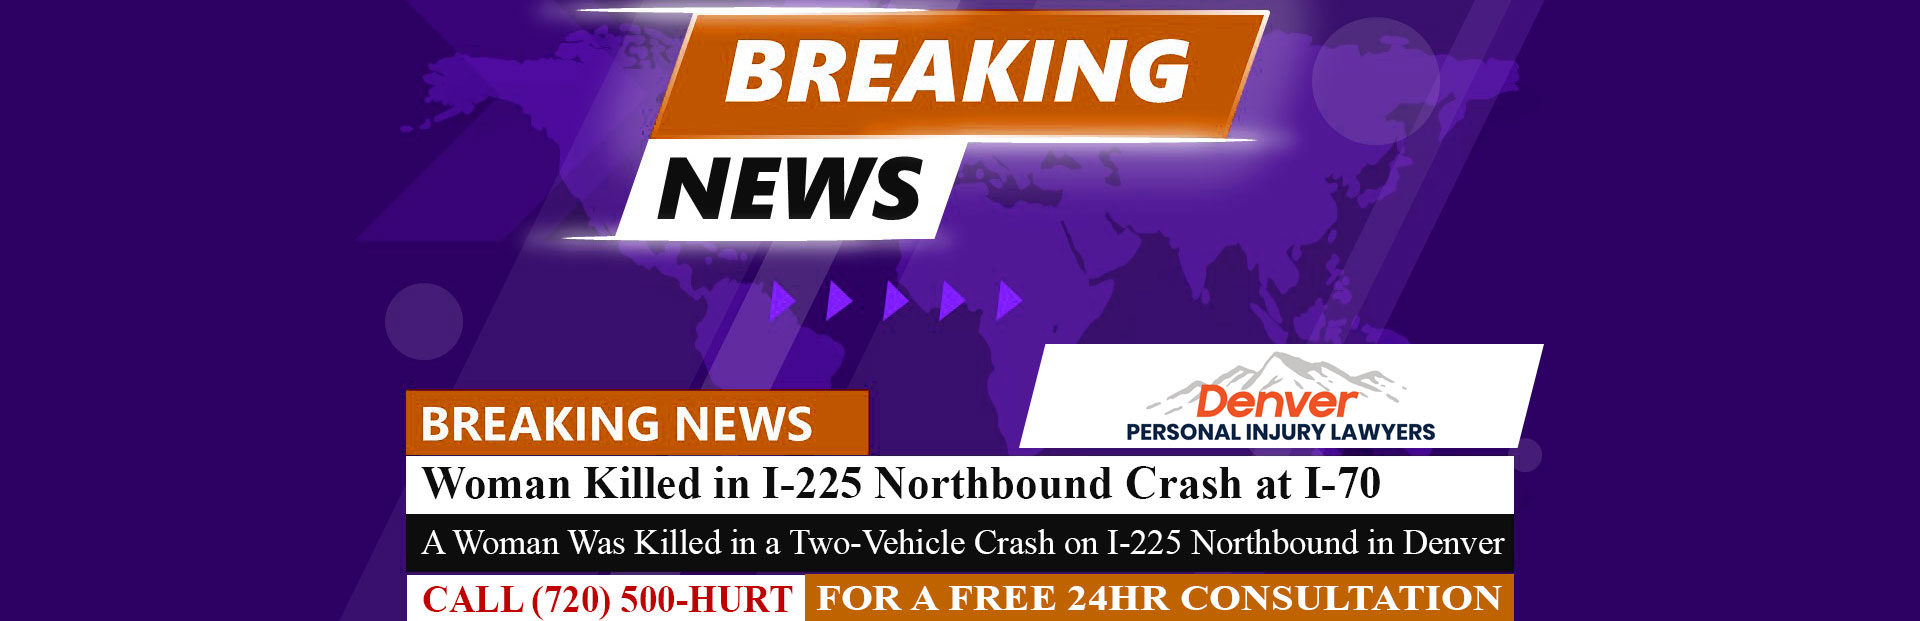 [5-30-22] Woman Killed in I-225 Northbound Crash at I-70 in Denver